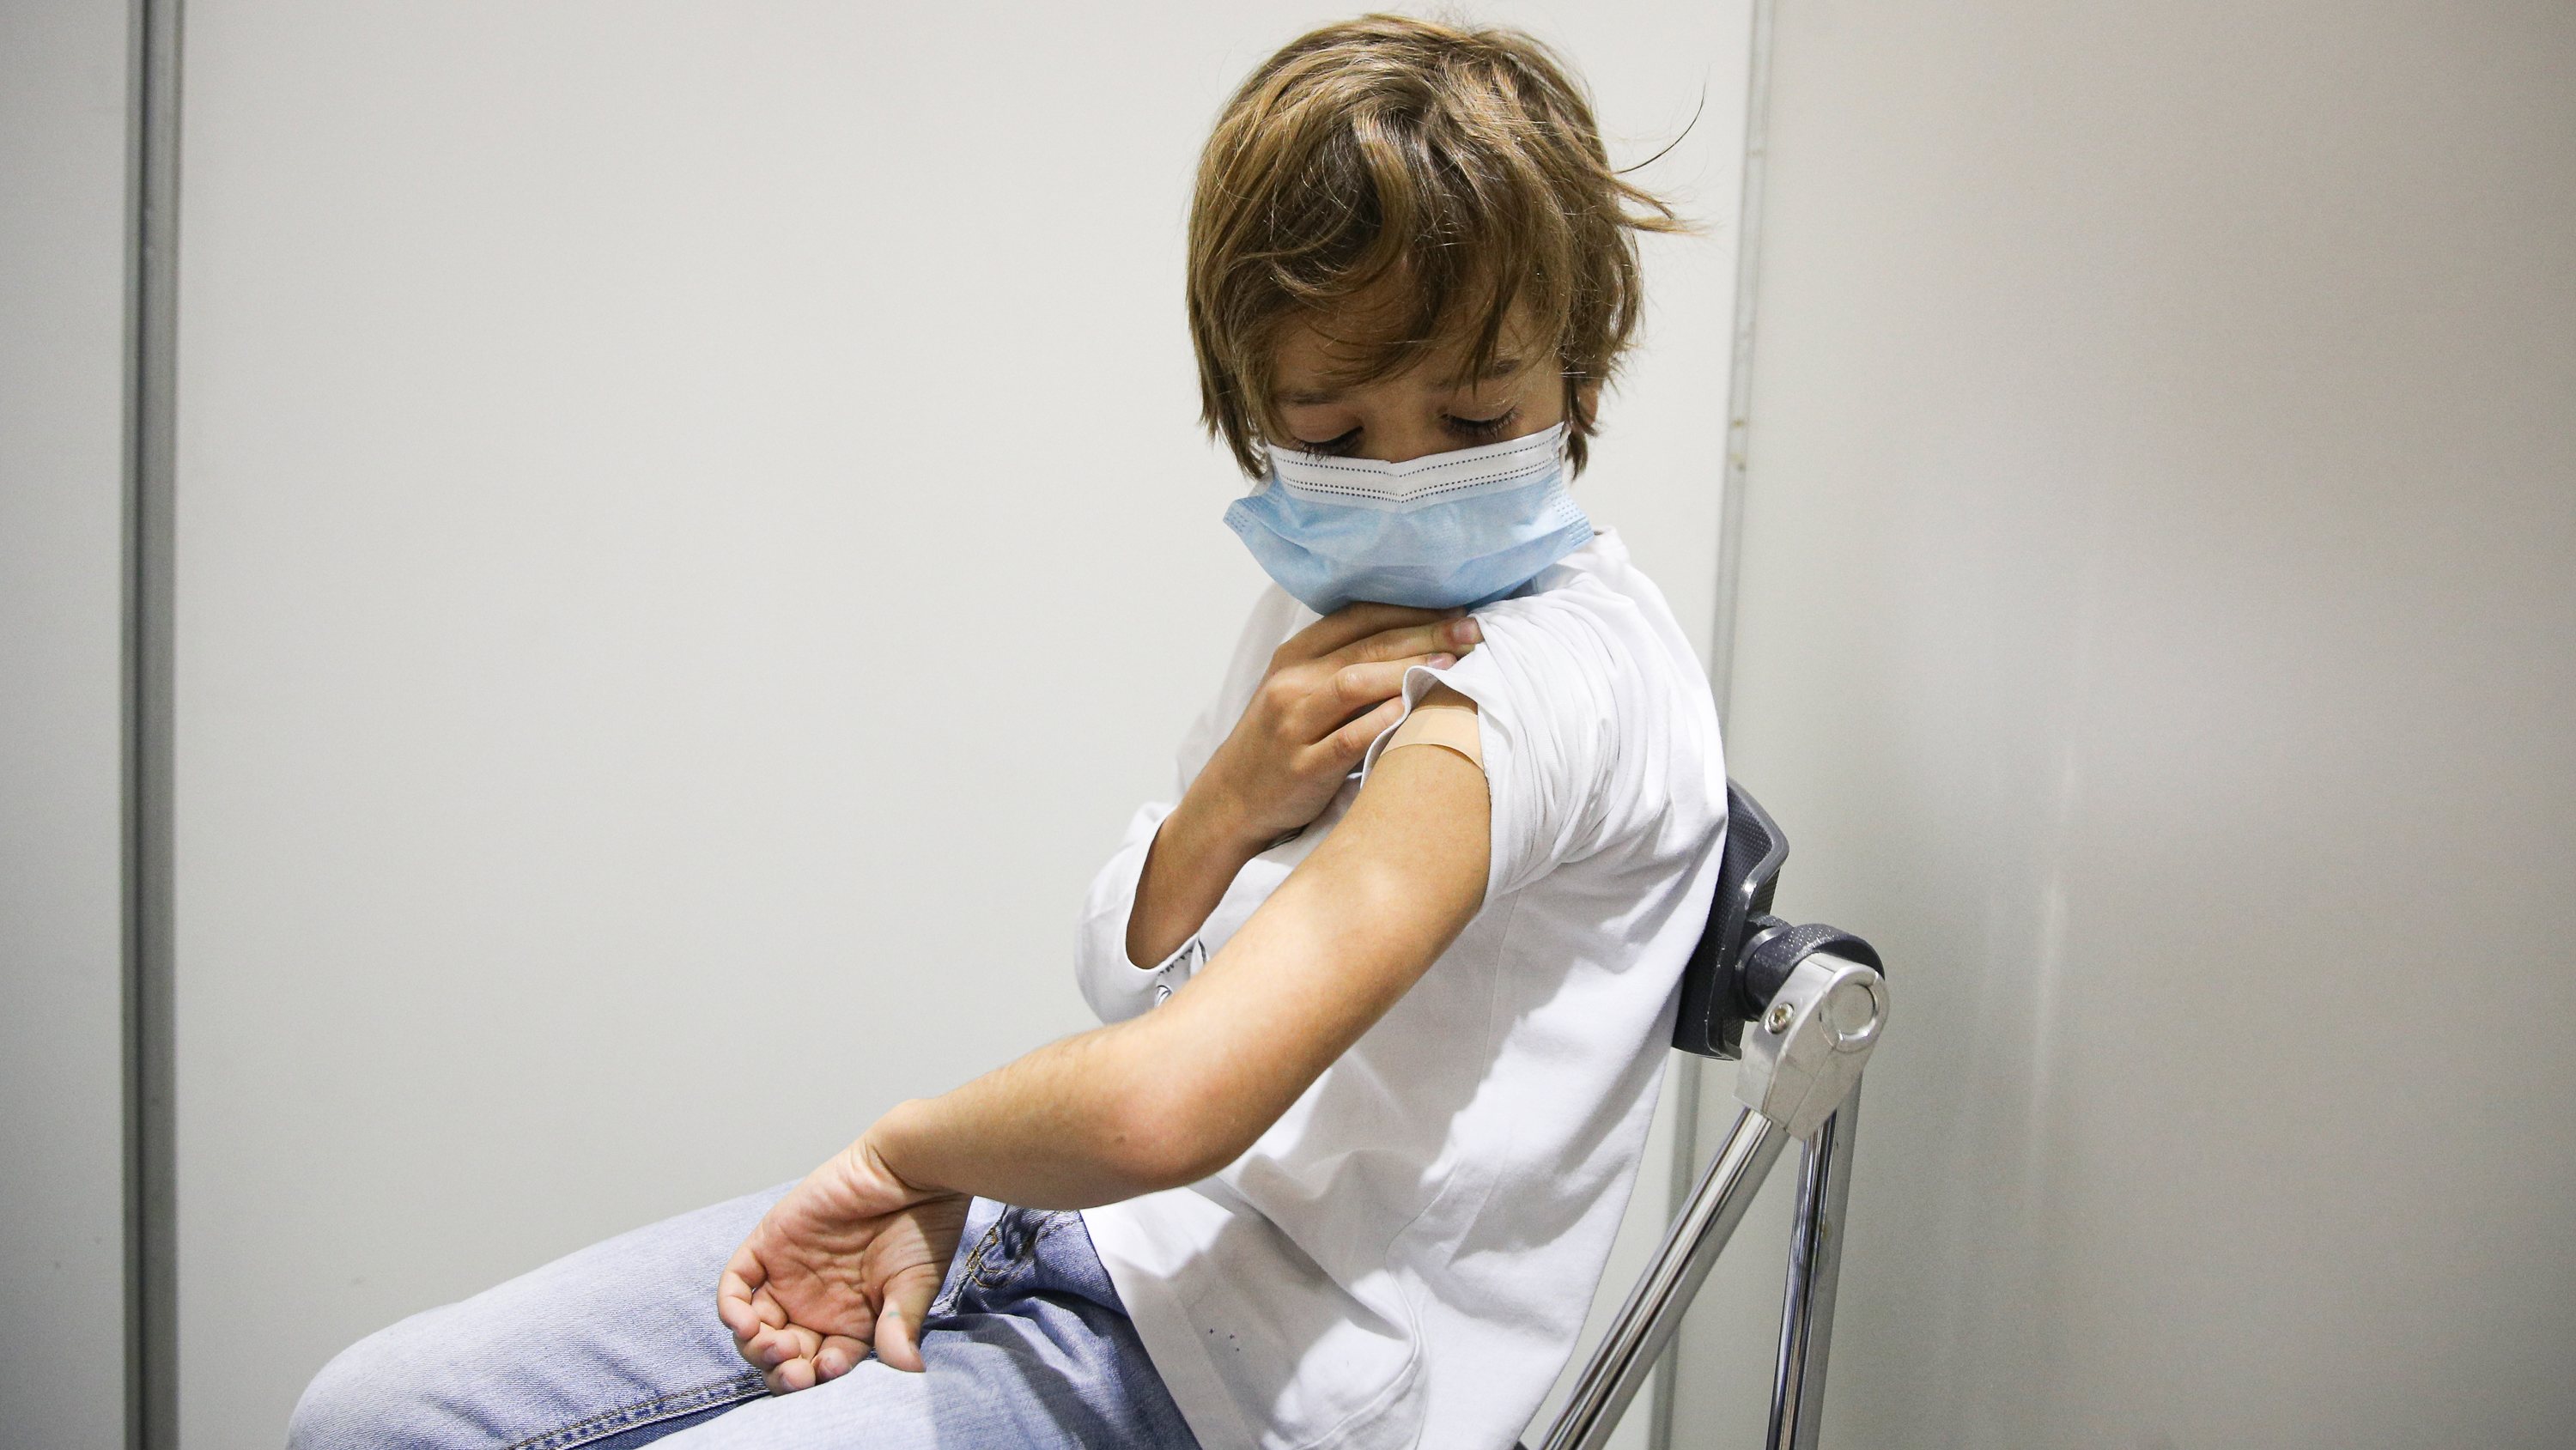 Crianças entre os 9 e 11 anos são vacinadas contra a covid-19 no Centro de Vacinação da FIL. Lisboa, 18 de Dezembro de 2021 FILIPE AMORIM/OBSERVADOR